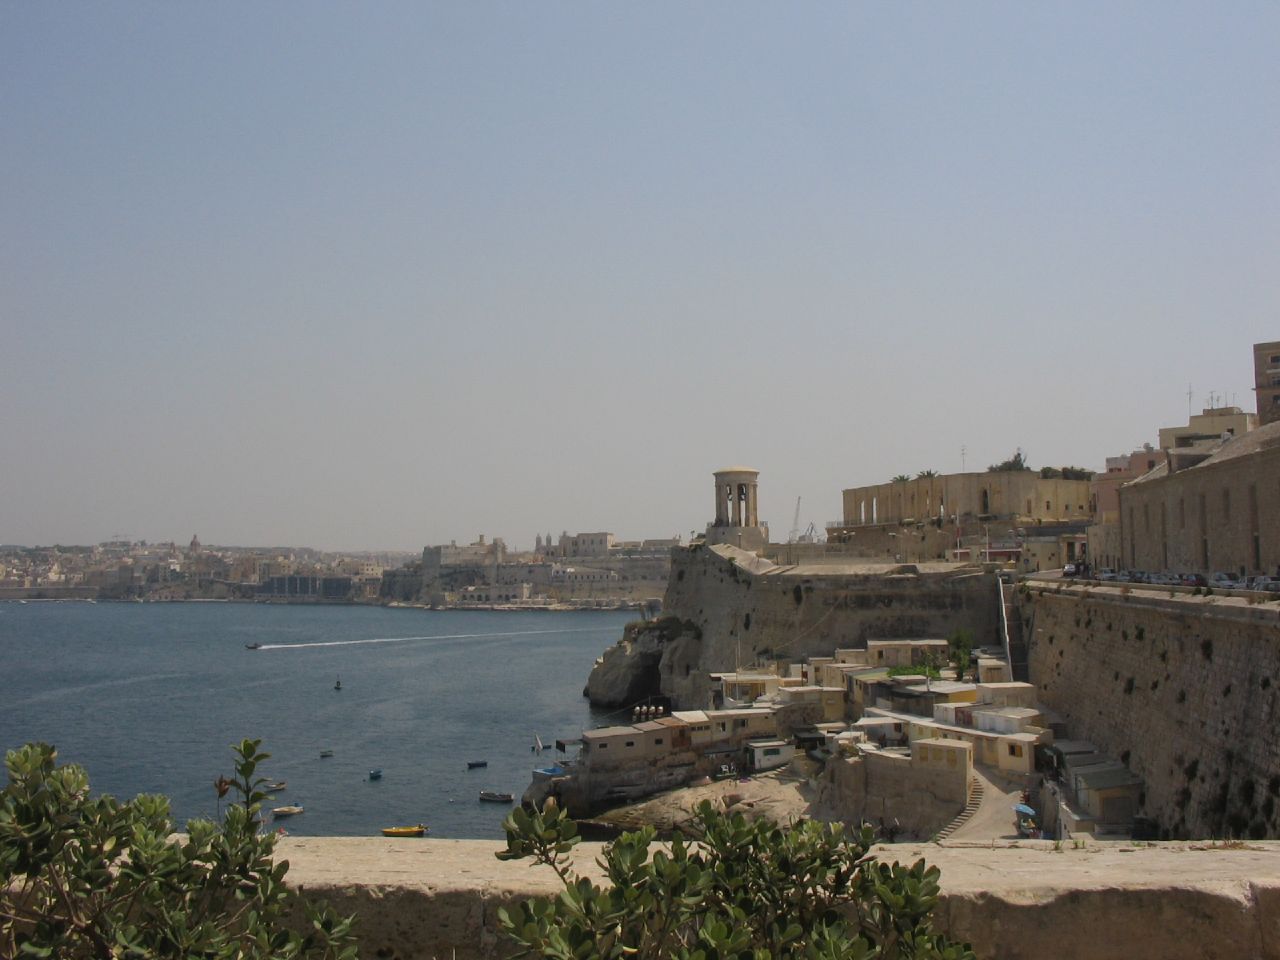 Walled capital city of Valletta, Malta